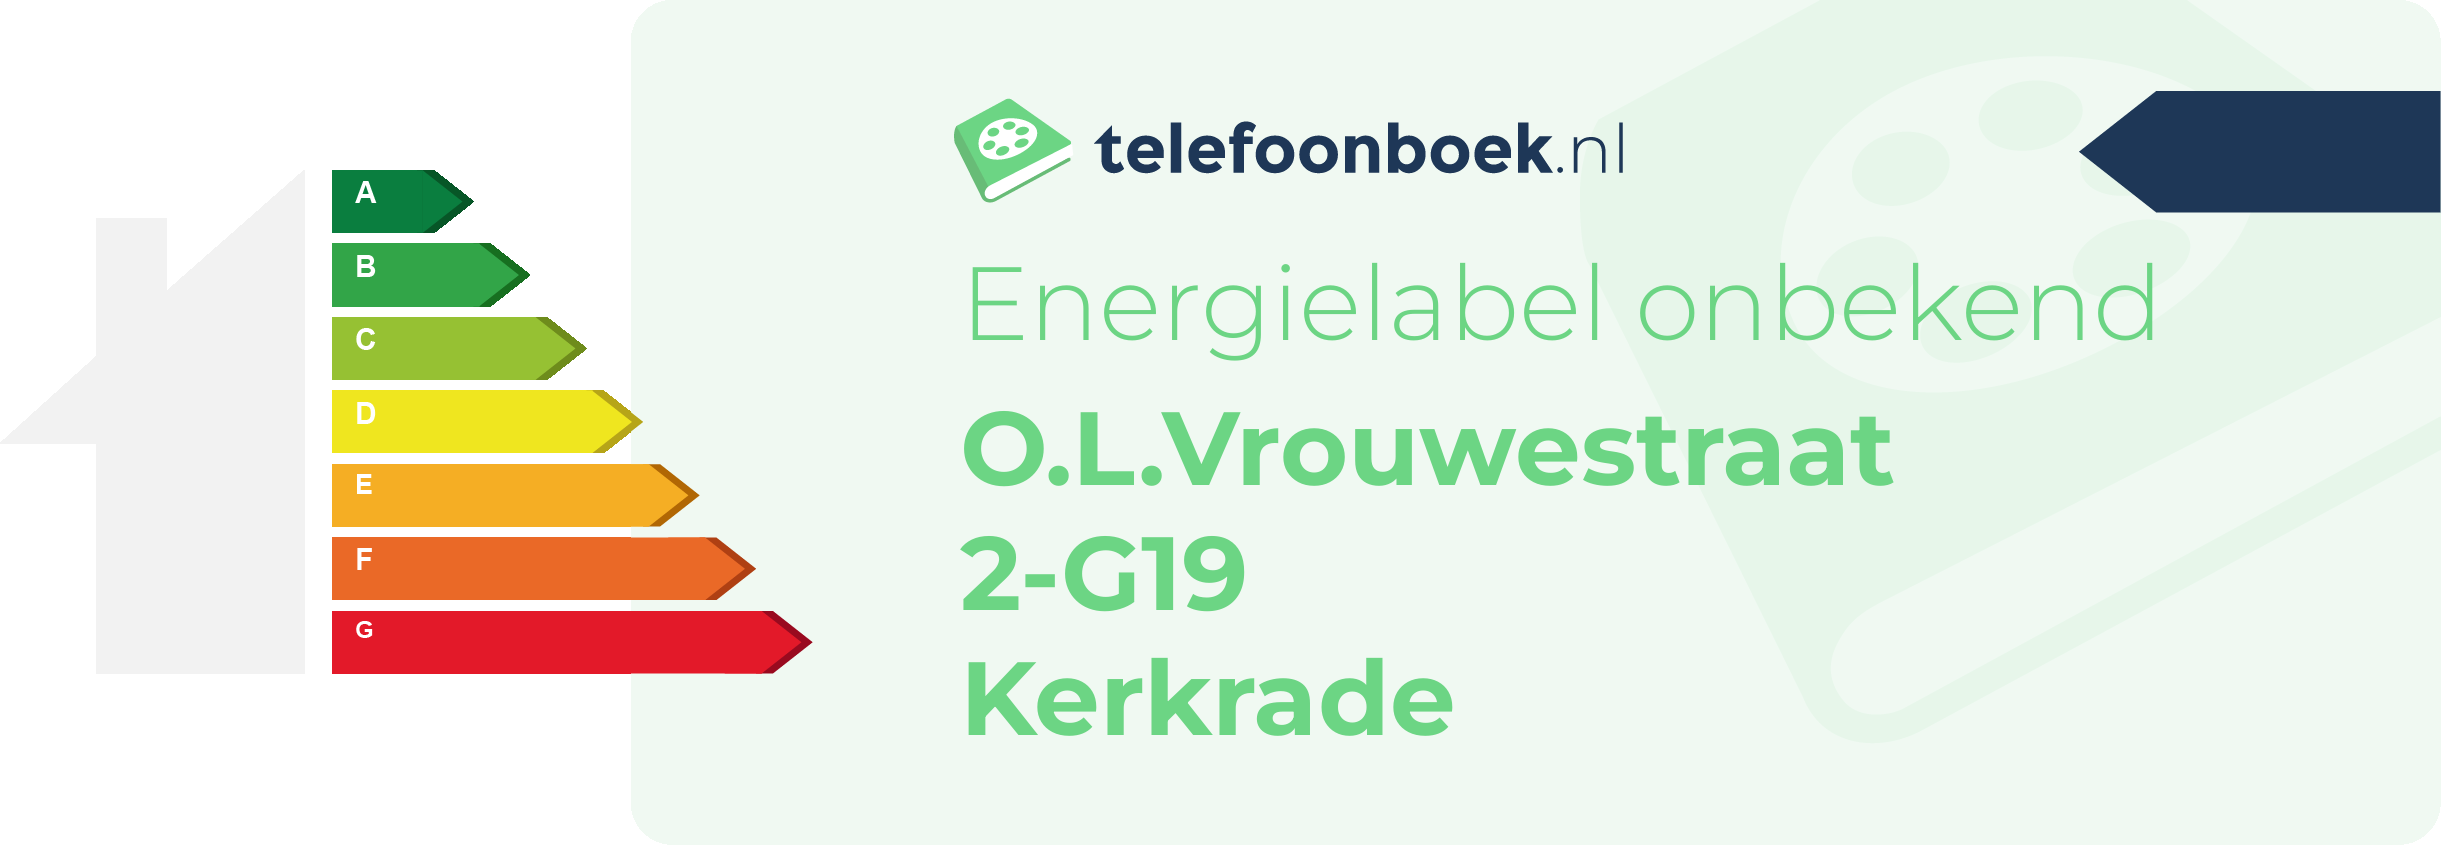 Energielabel O.L.Vrouwestraat 2-G19 Kerkrade